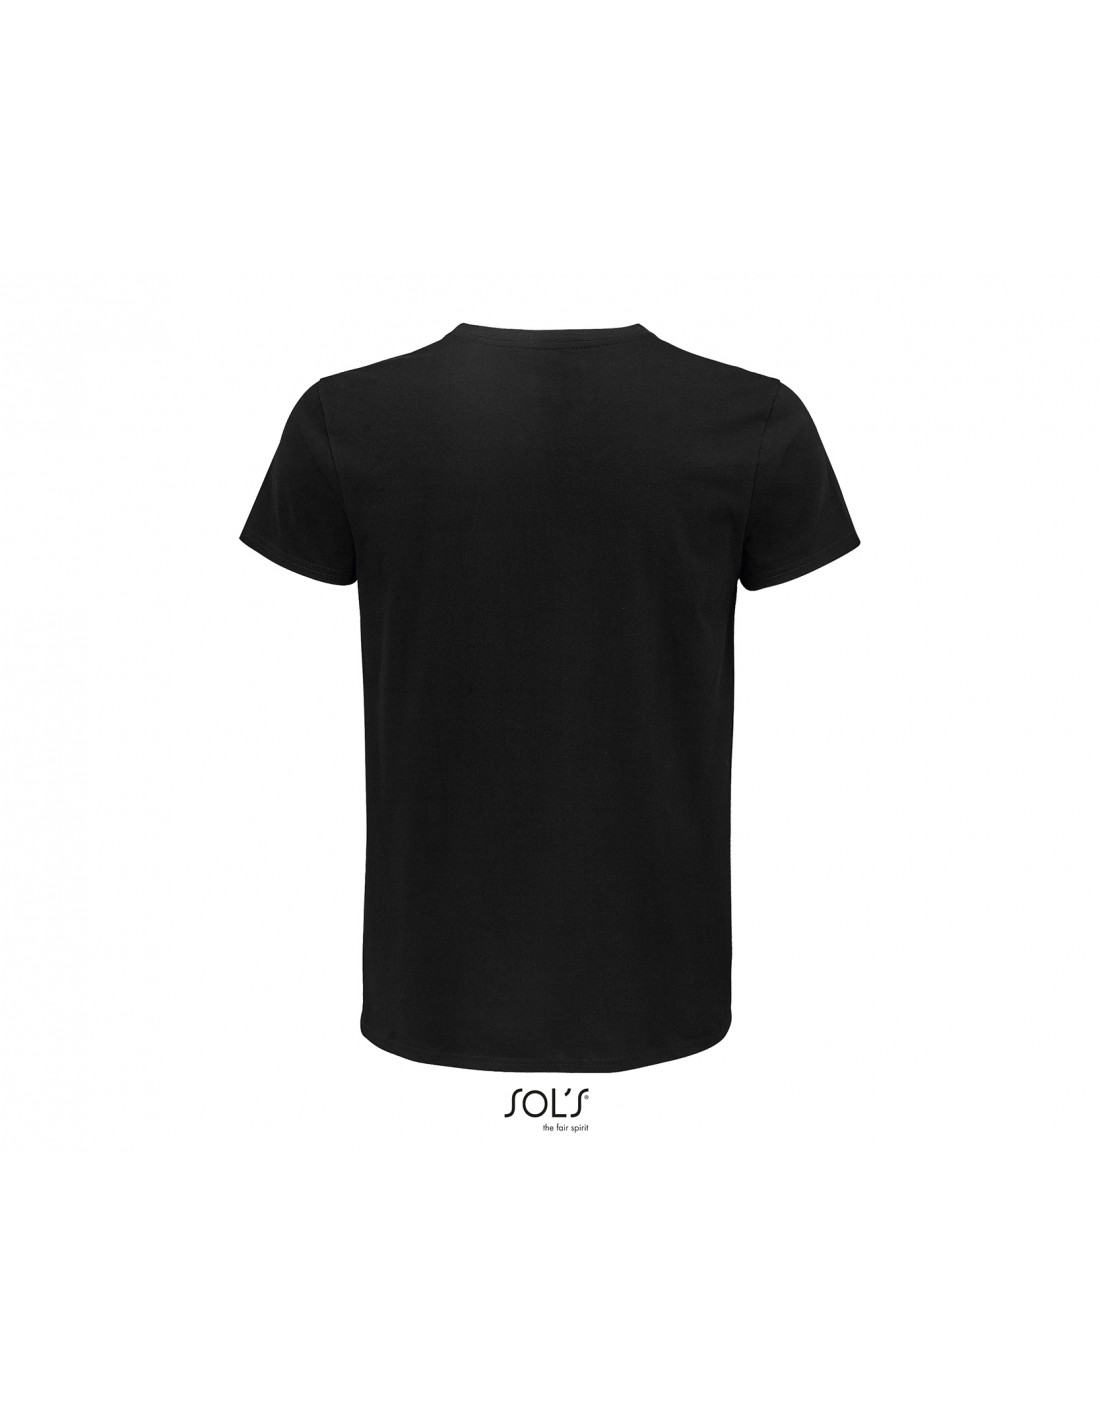 Camisetas negras personalizadas